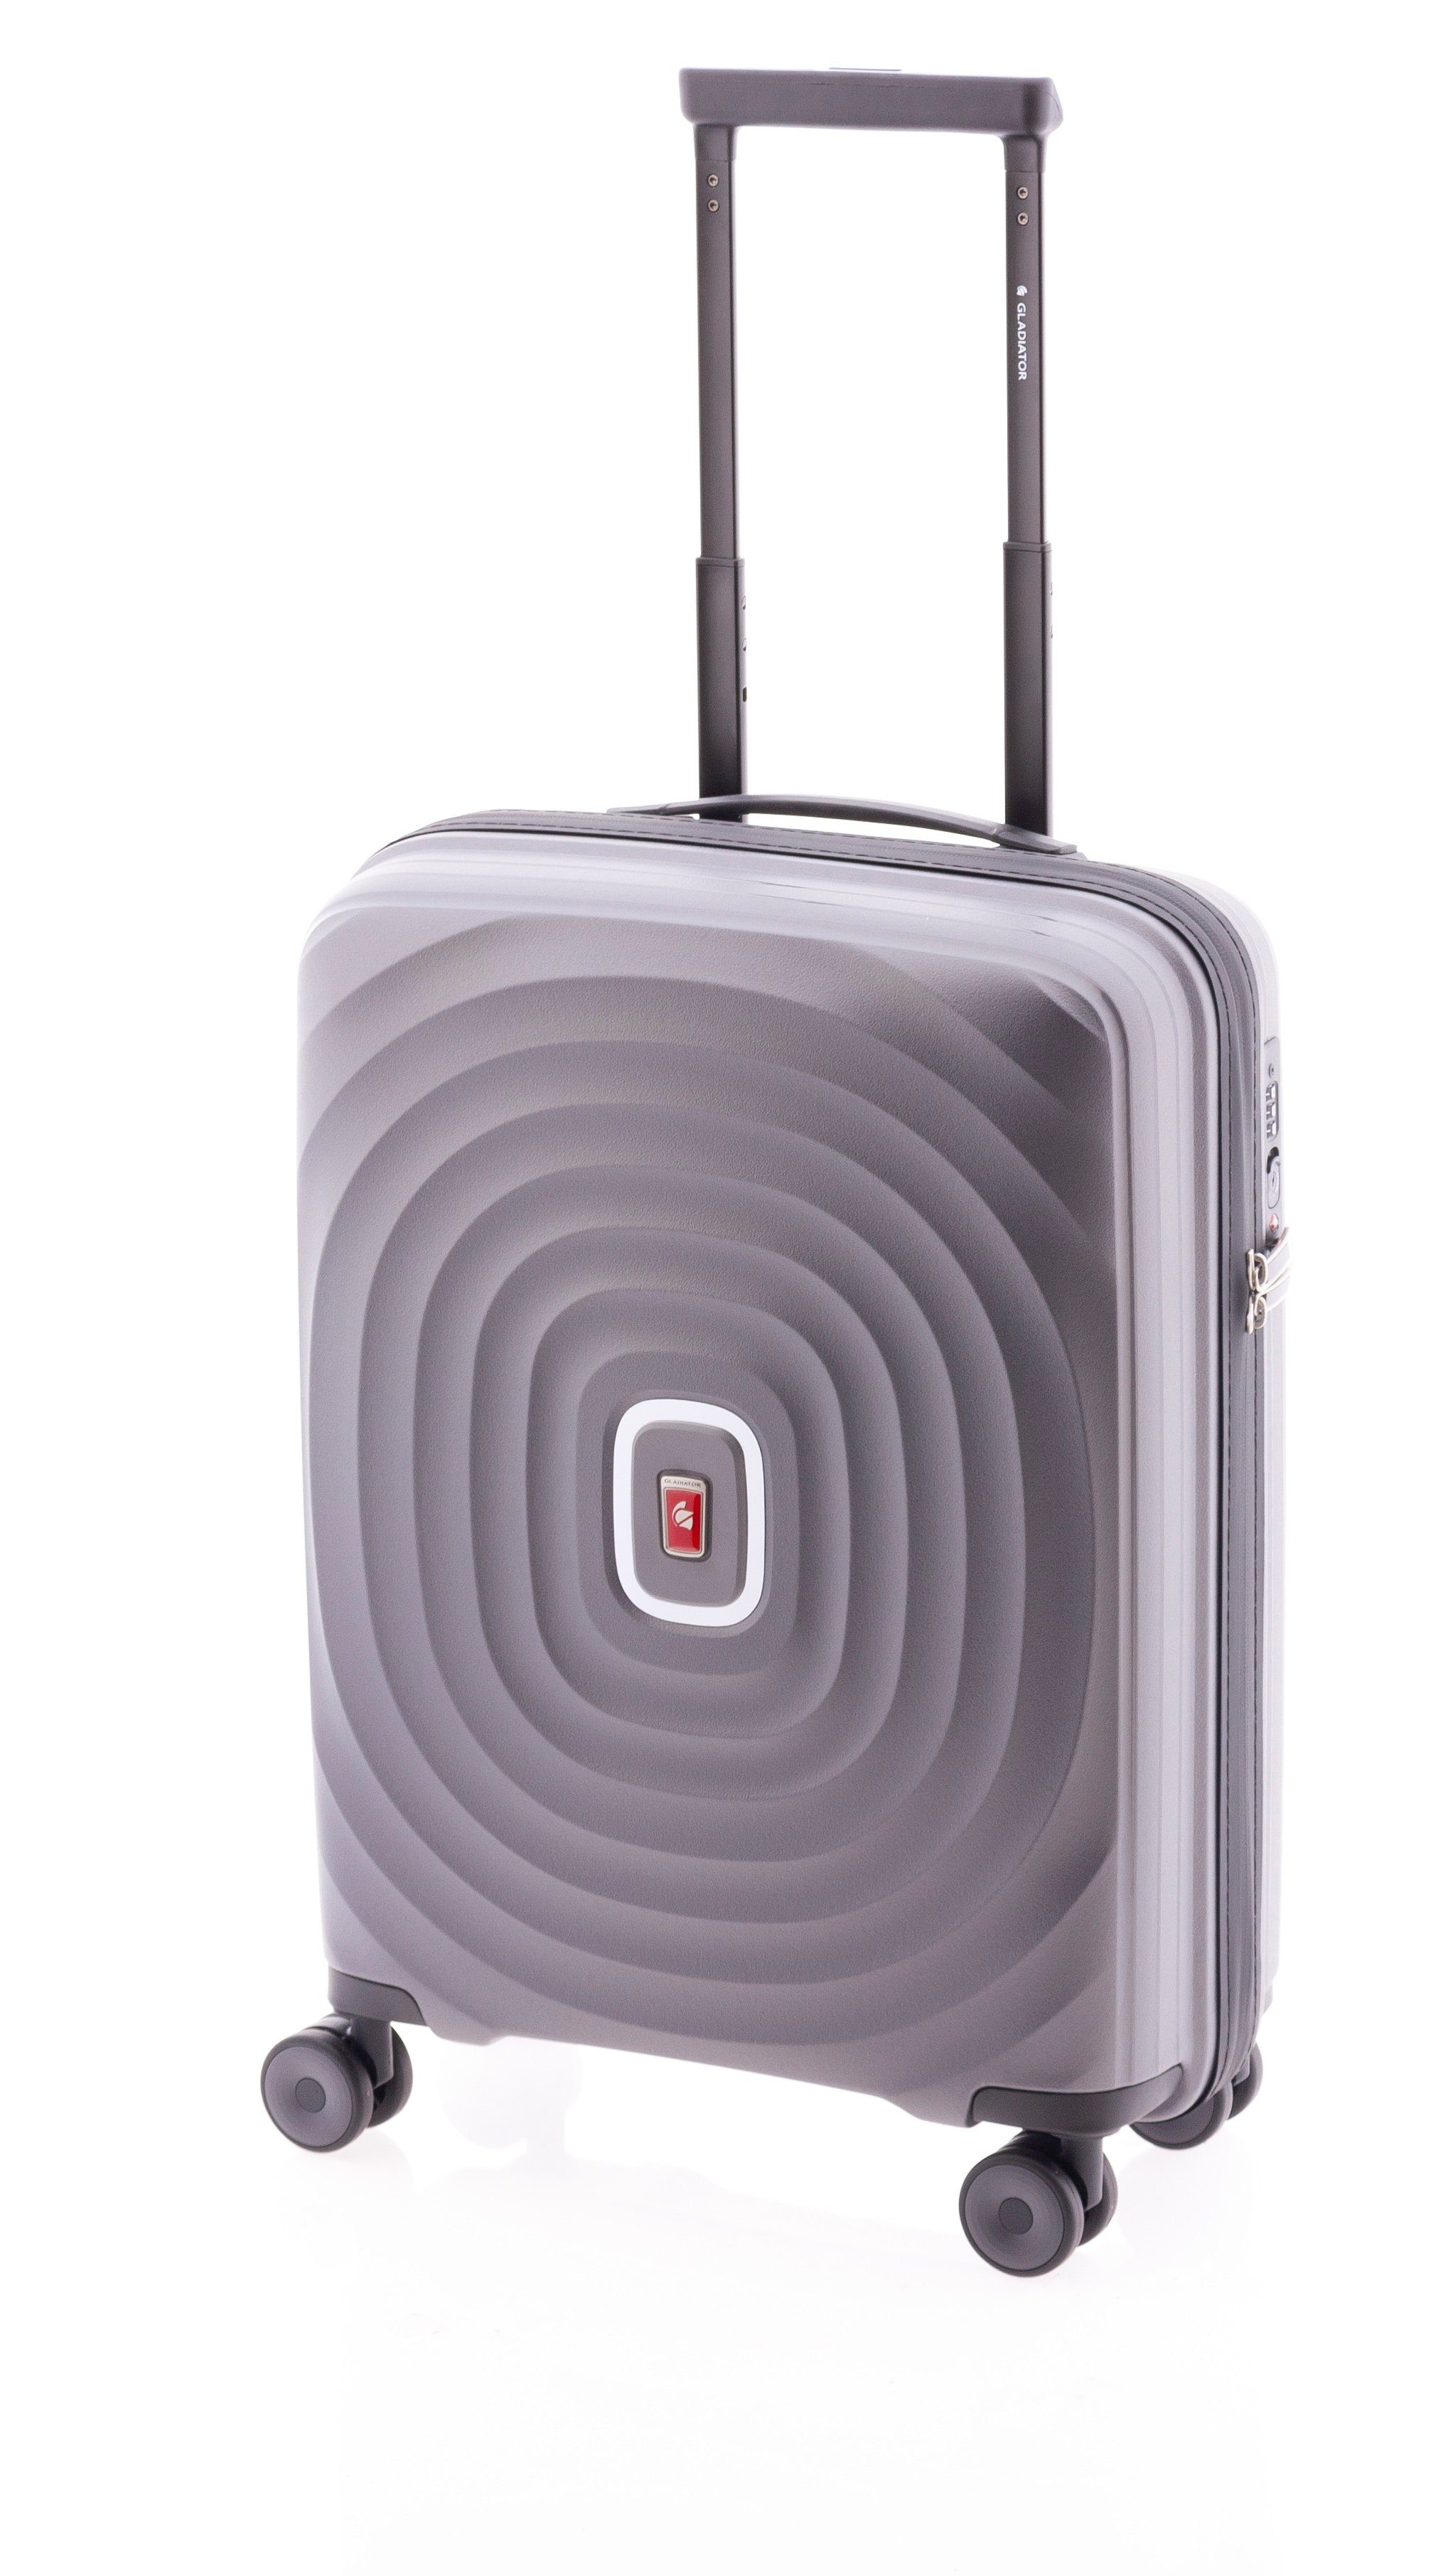 Class-Koffer nur 55 unzerstörbar, Farben cm, fast Handgepäck-Trolley grau 2 High kg, 3 GLADIATOR